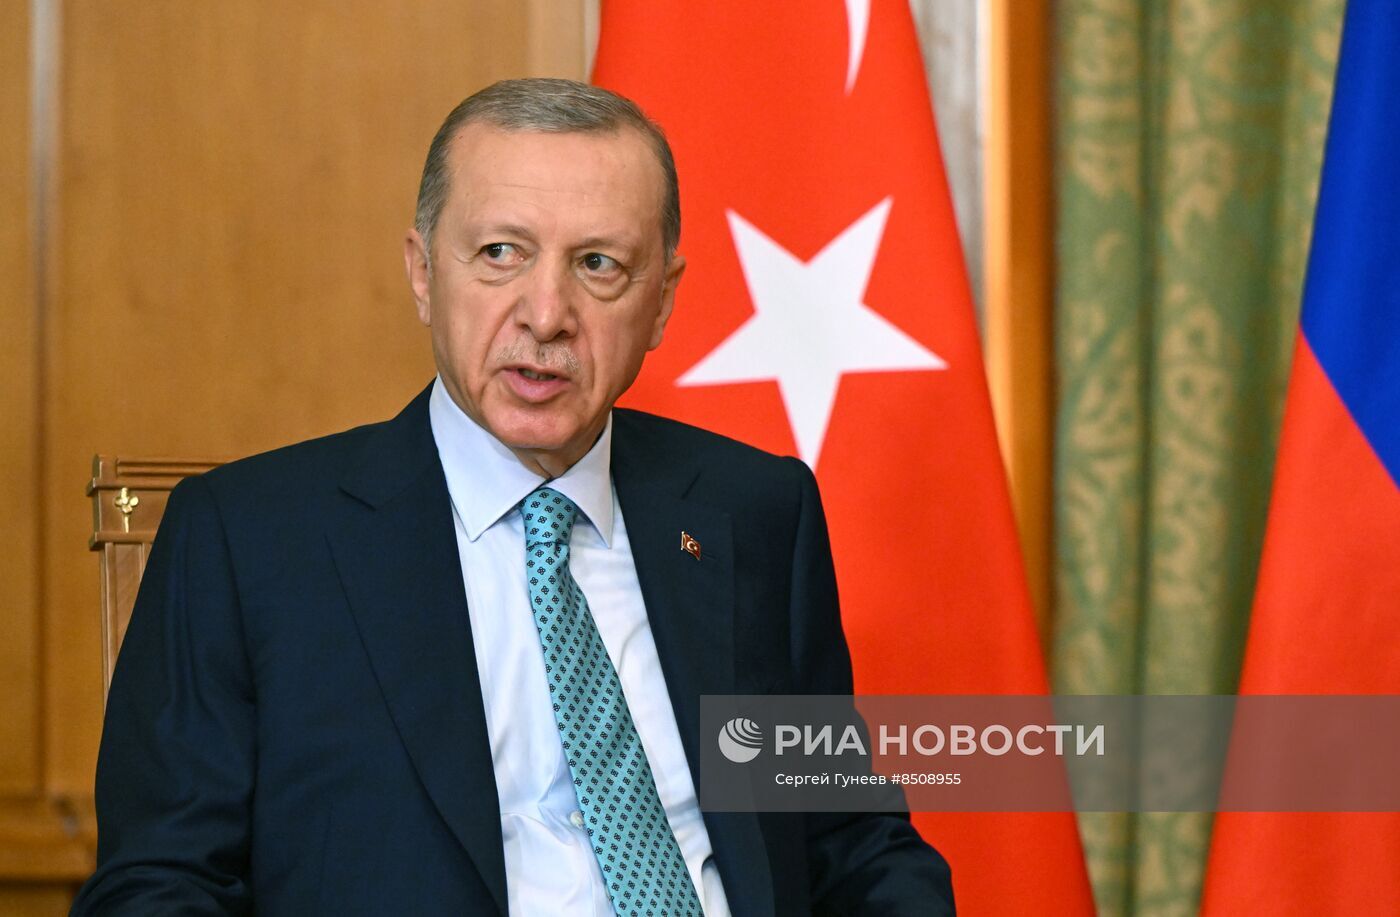 أردوغان: السويد لم تف بوعودها لتركيا للانضمام إلى 